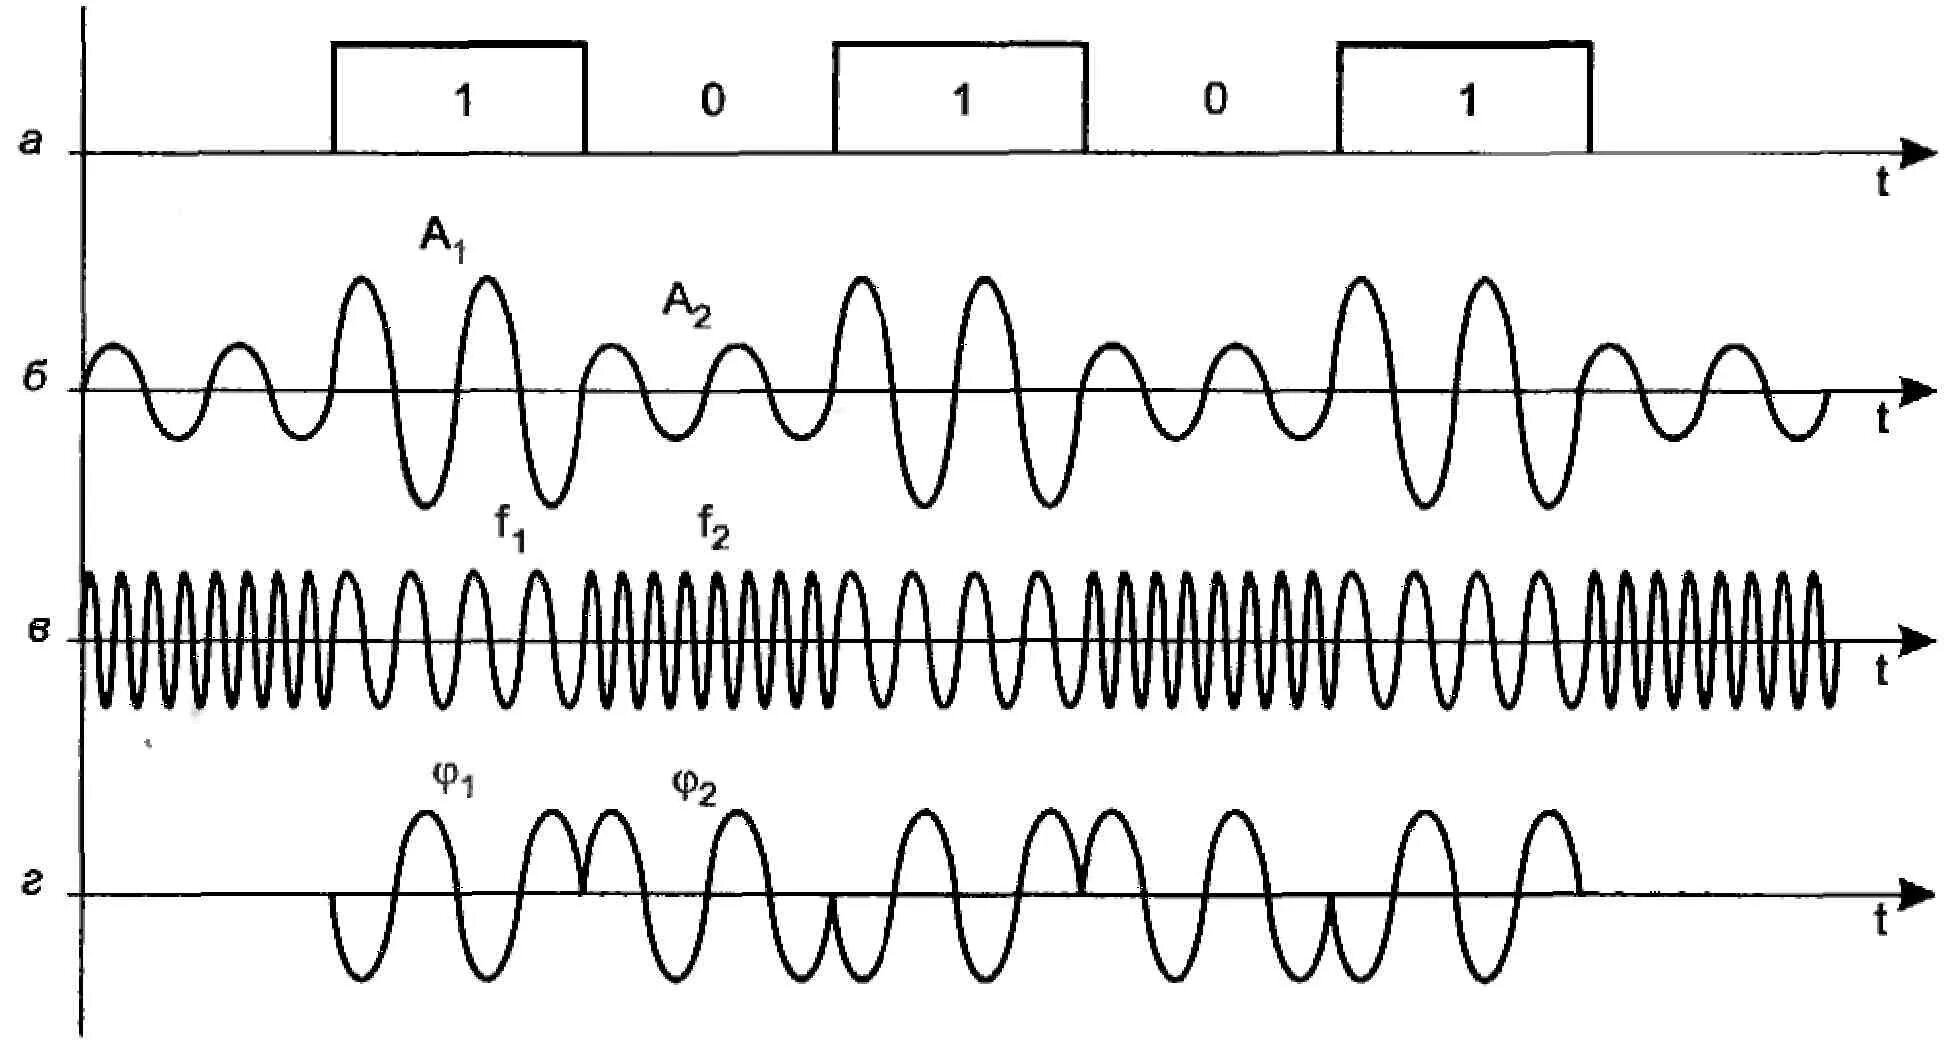 Фазовая модуляция аналогового сигнала. Схема модуляция амплитудная фазовая частотная. Временная диаграмма фазомодулированного сигнала. Виды модуляции сигналов.